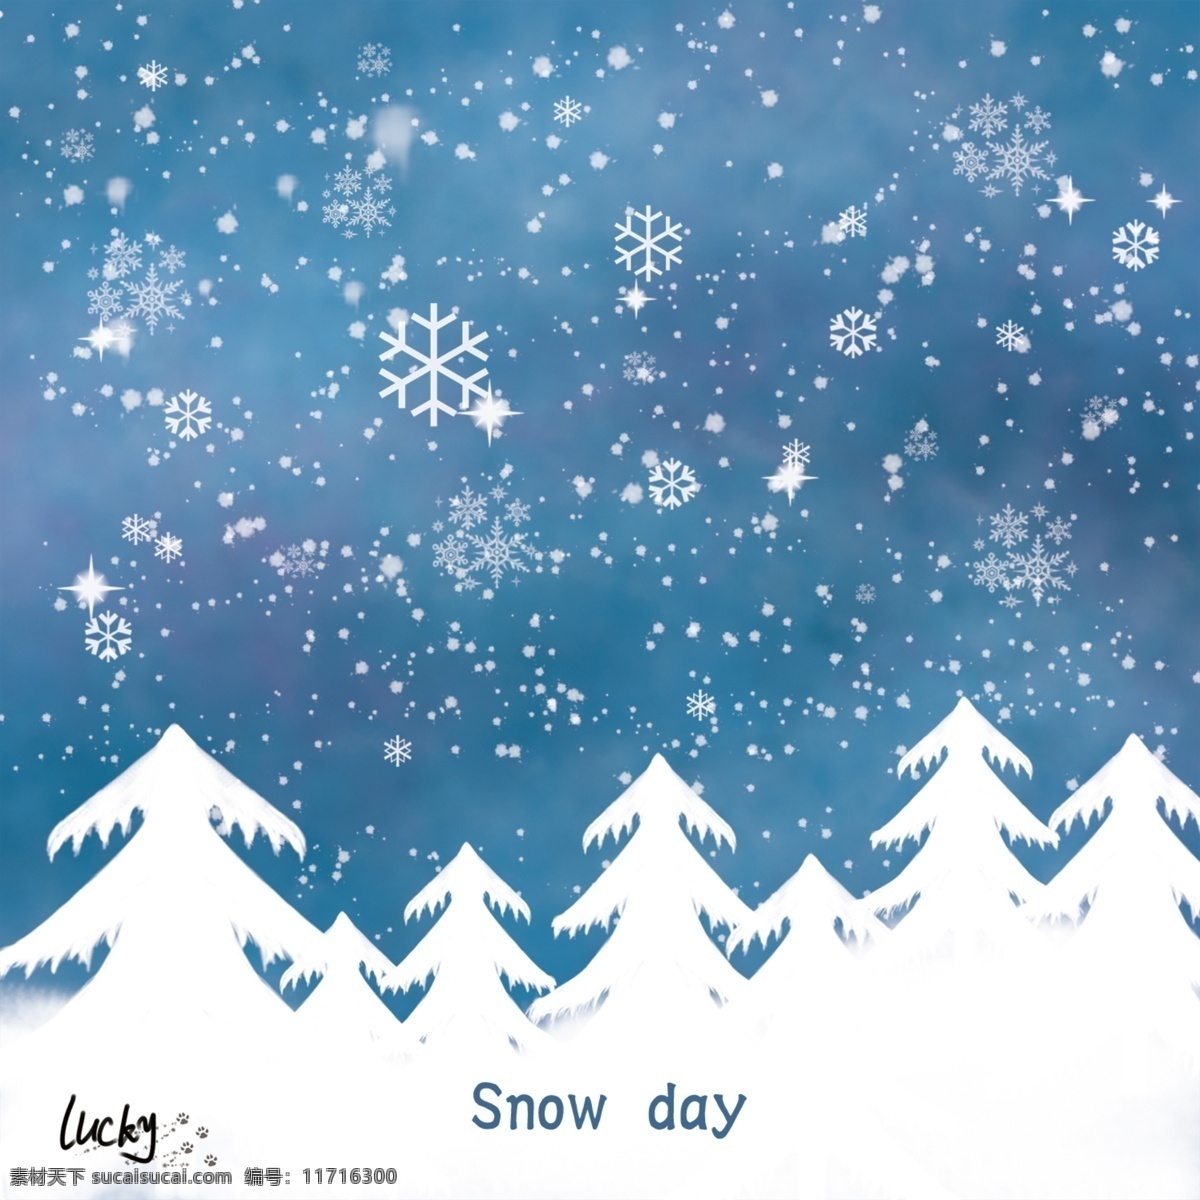 下雪天 雪 雪花 蓝色雪花背景 雪景 卡通设计